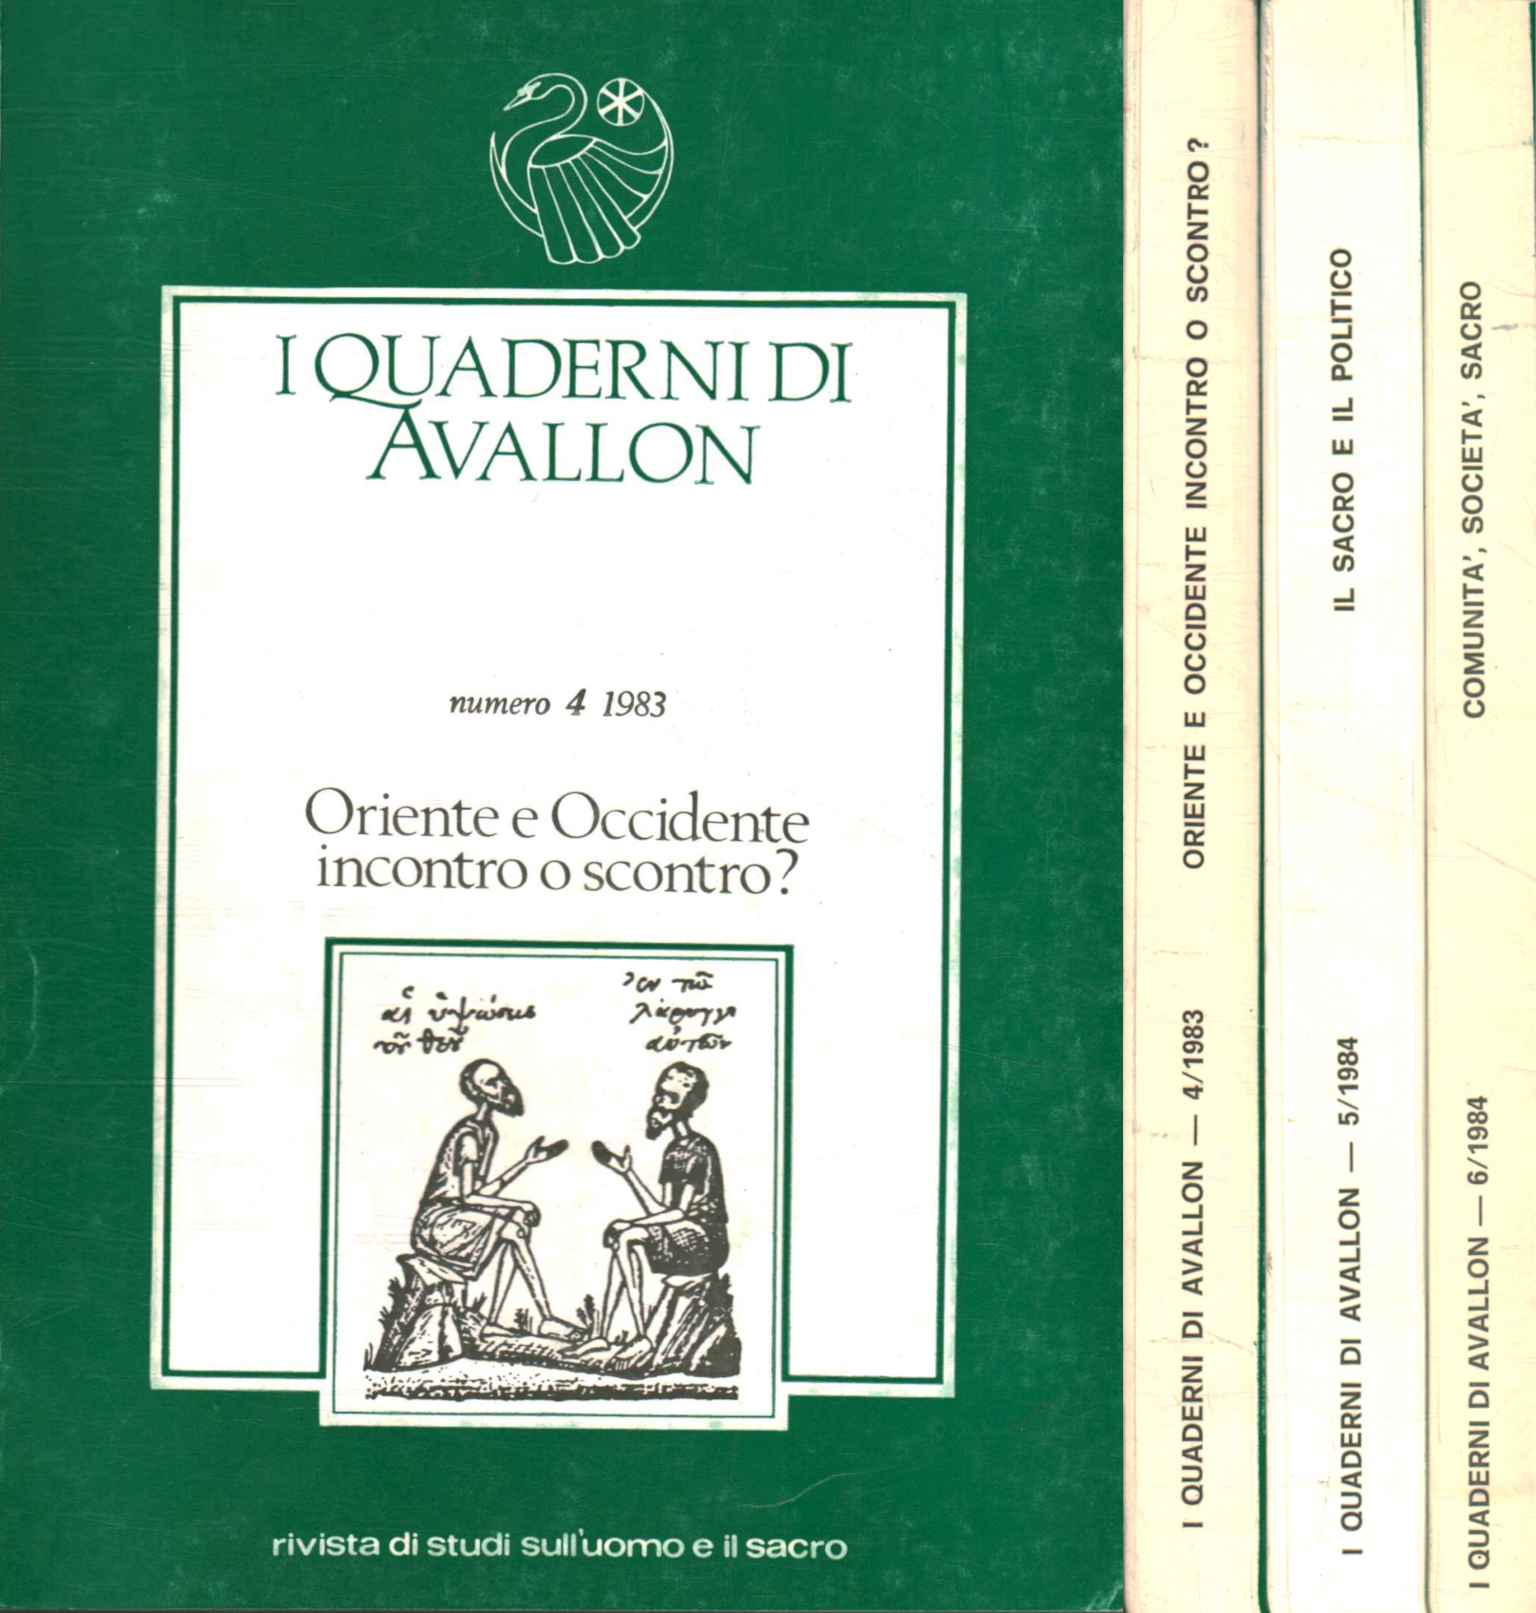 Los cuadernos de Avallon 1984 (3 volúmenes), Los cuadernos de Avallon 1984 (3 volúmenes), Los cuadernos de Avallon 1984 (3 volúmenes), Los cuadernos de Avallon 1984 (3 volúmenes,